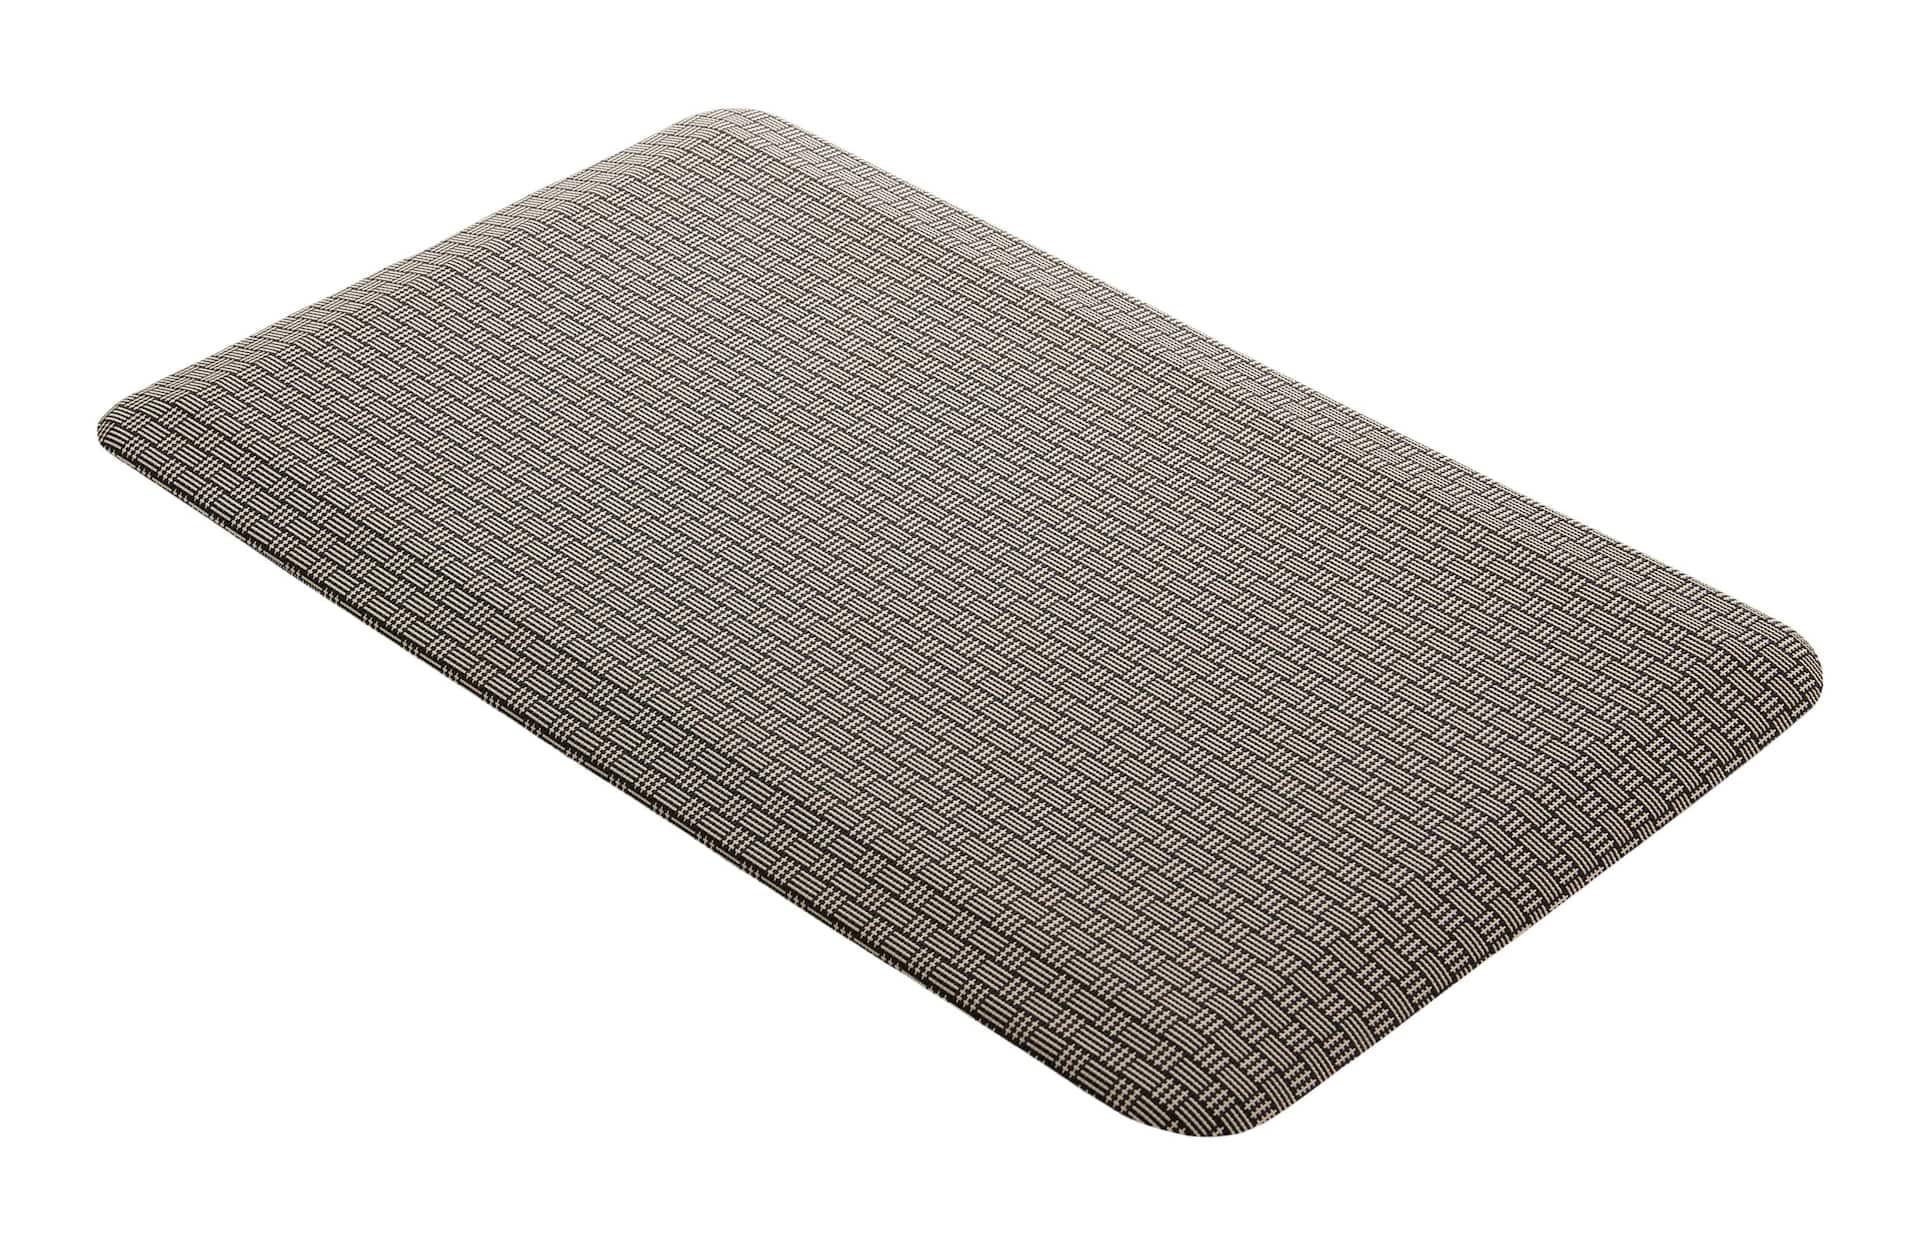 CANVAS Textilene Anti Fatigue Indoor Comfort Floor Mat, Black & Grey  Checkered, 18-in x 30-in